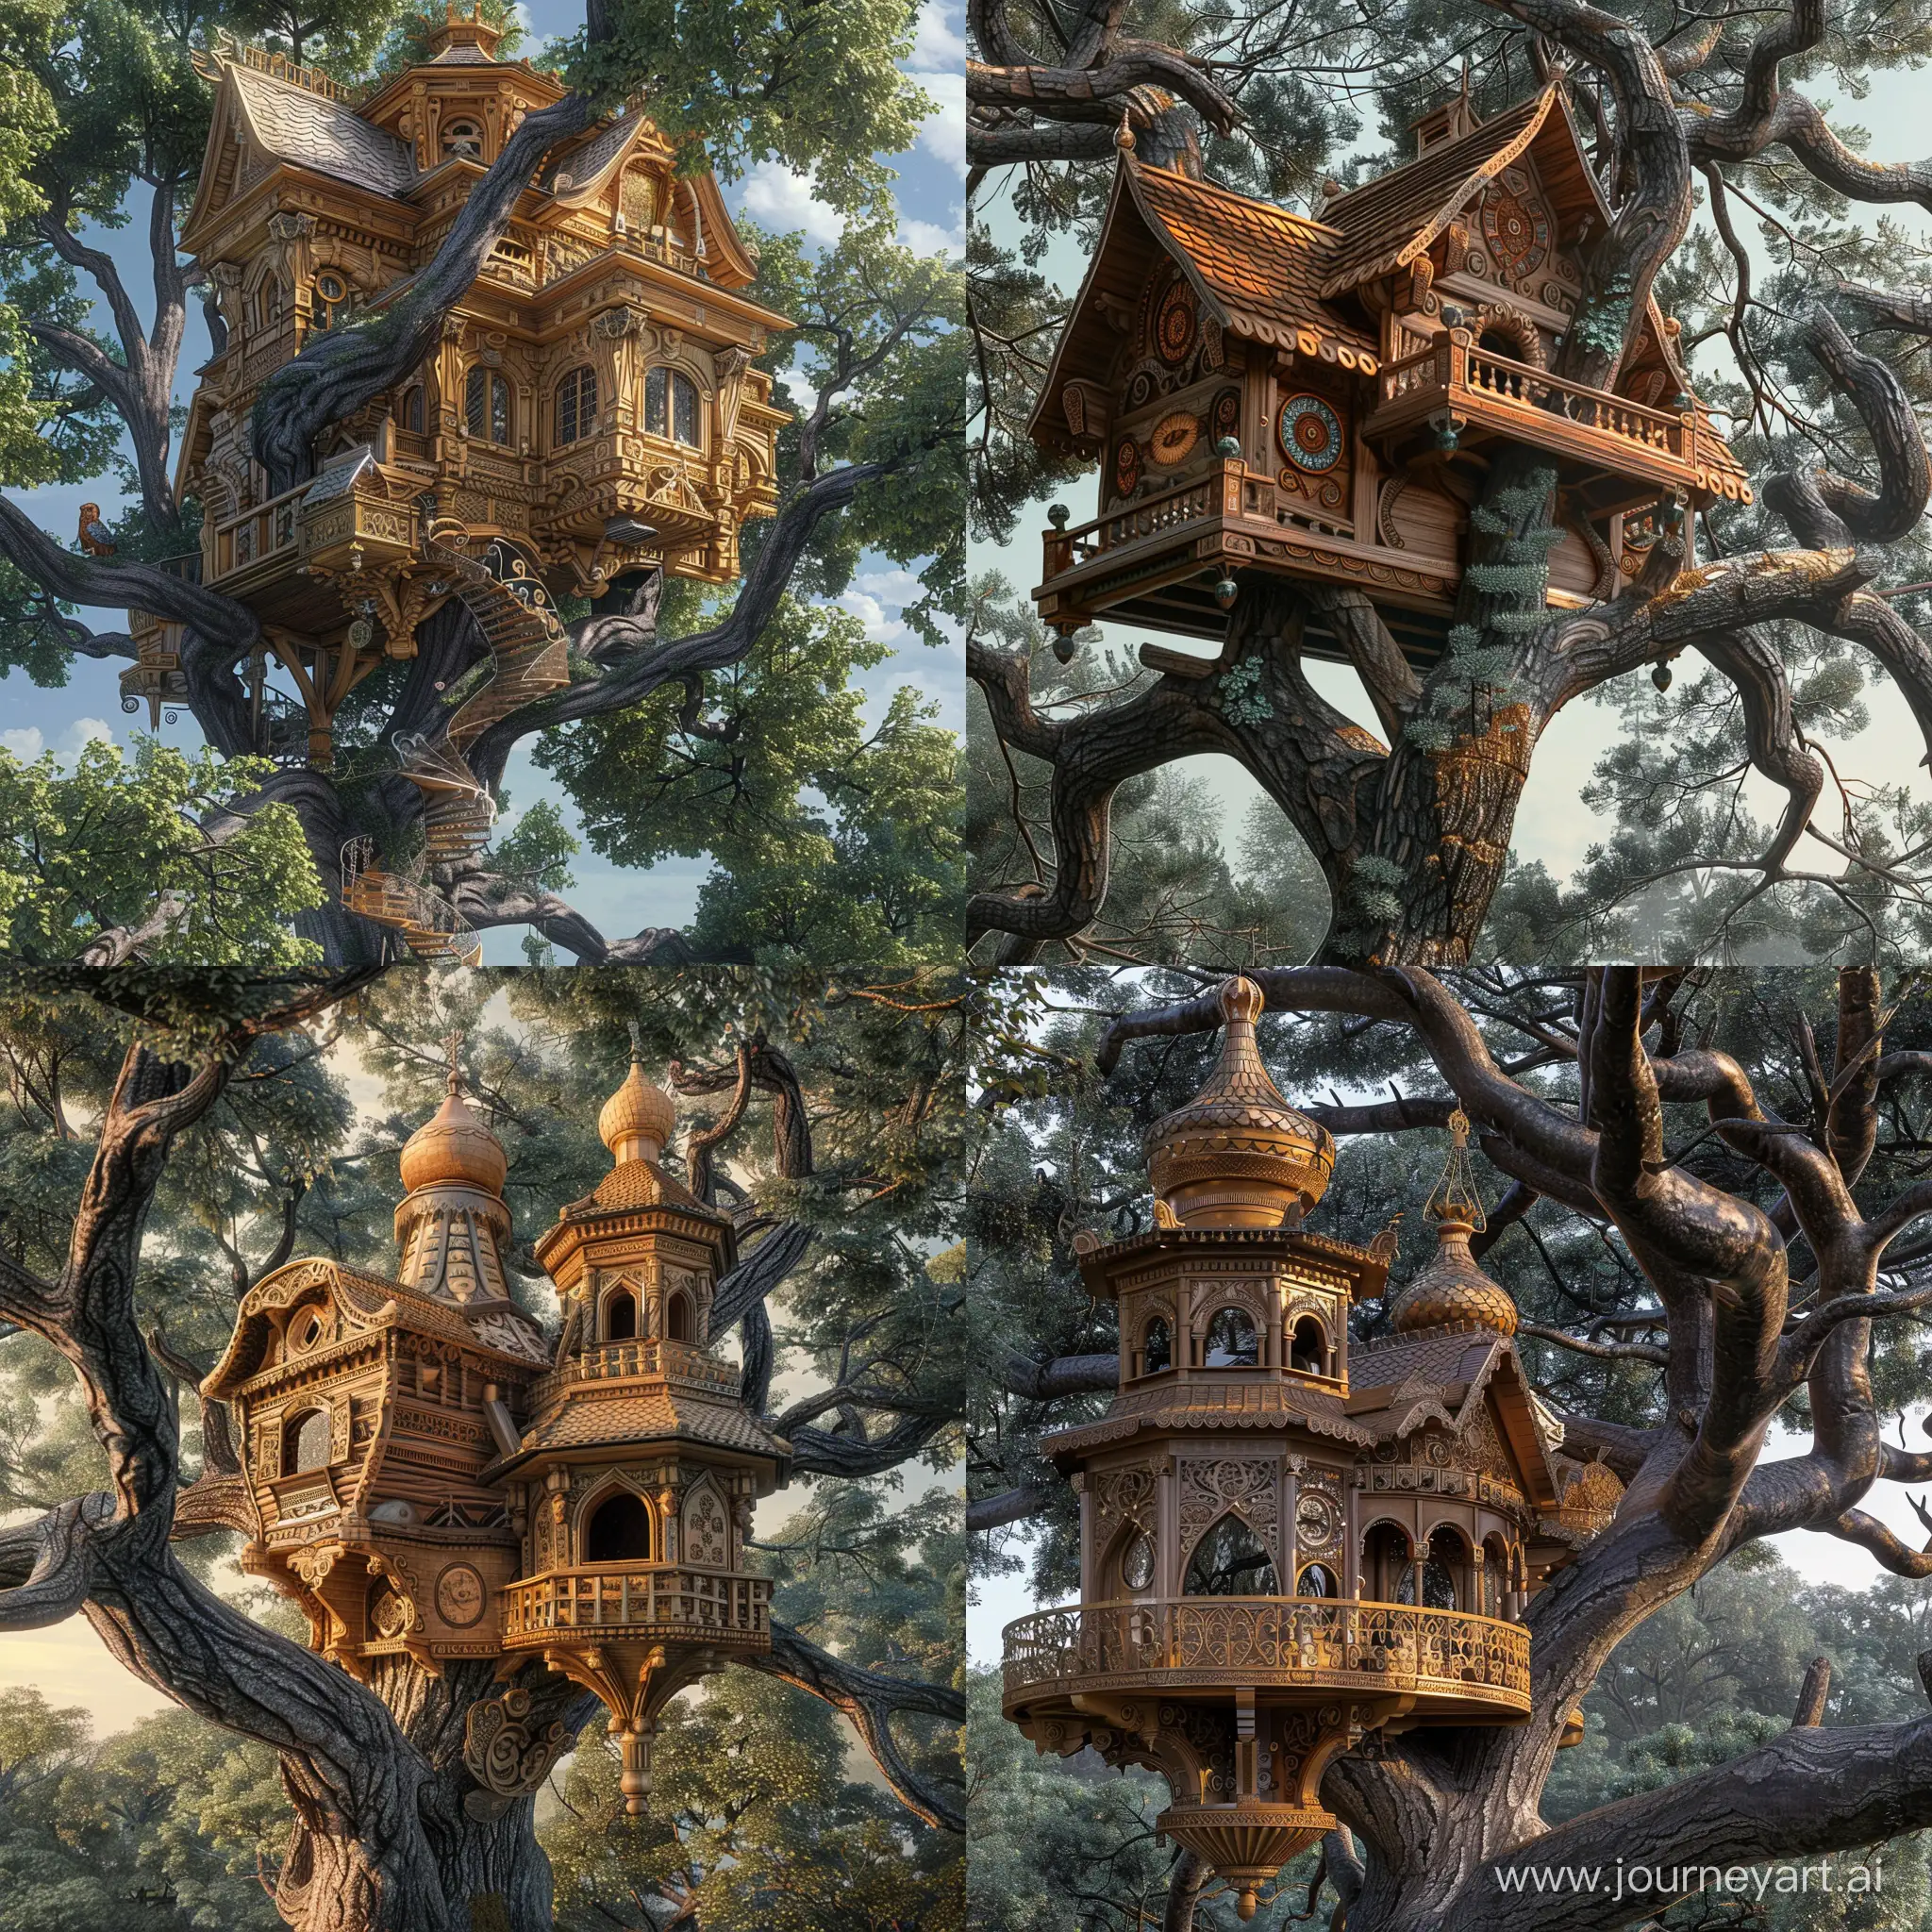 Огромный сказочный древнерусский деревянный дом для птиц на ветках огромного дерева, древнерусское зодчество, русские сказки, узоры, барельефы, концепт арт